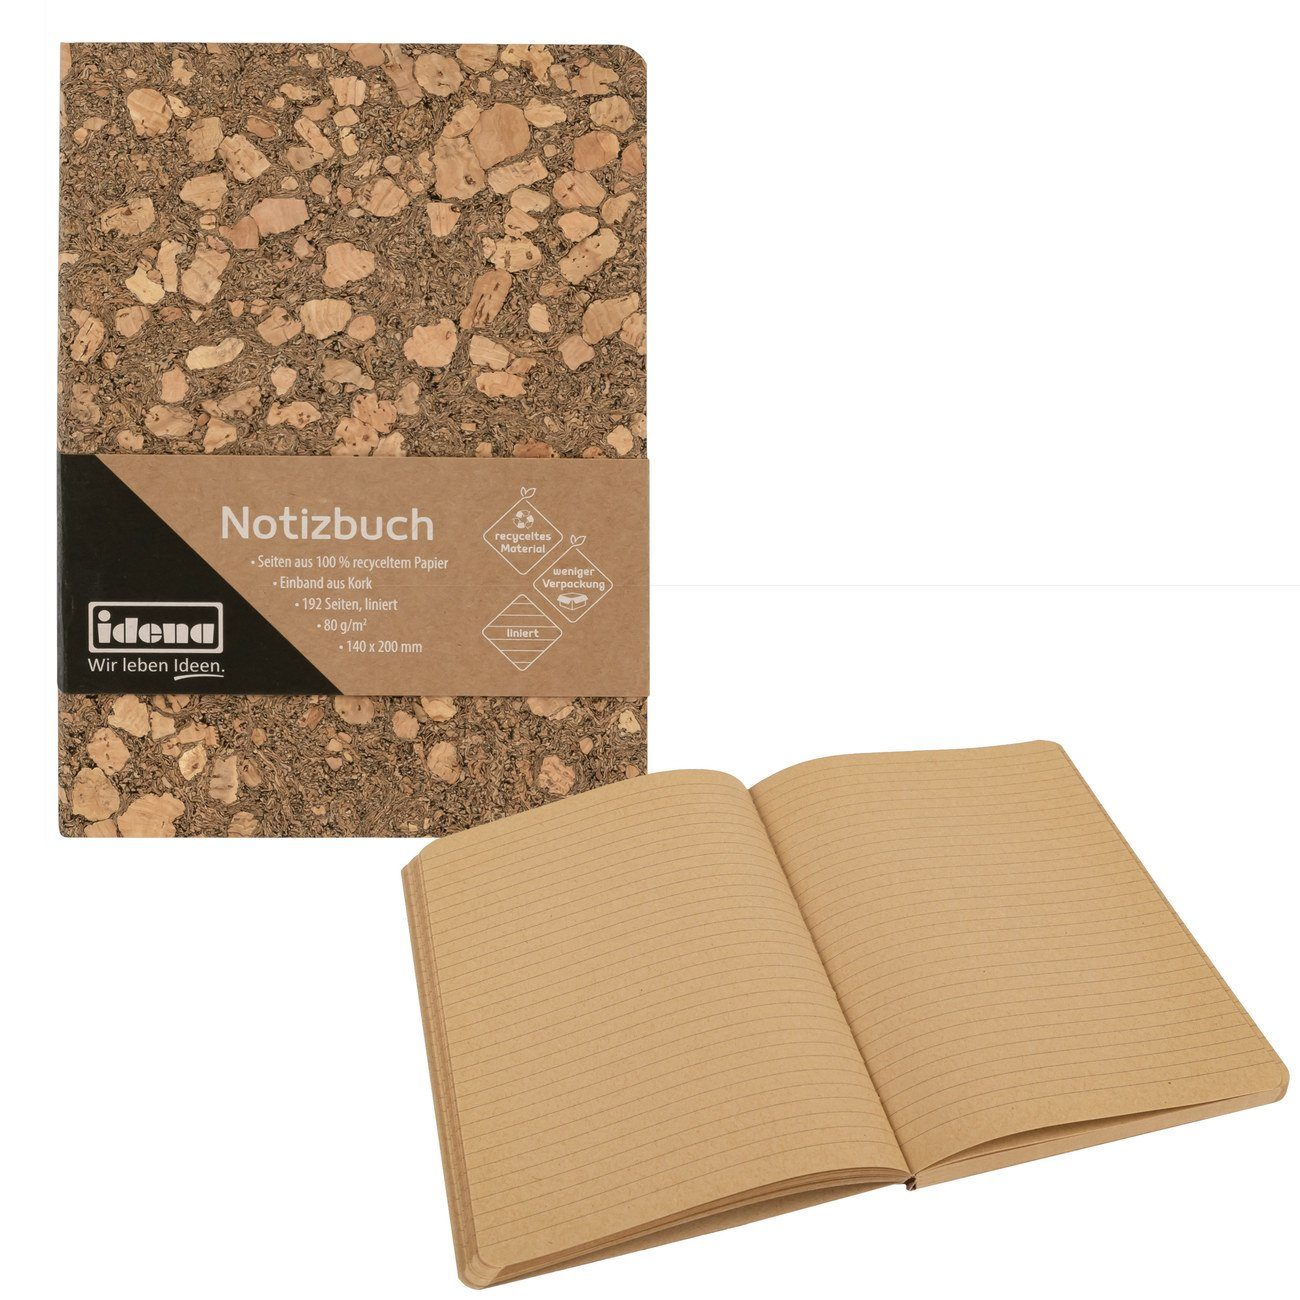 Idena Notizbuch Notizbuch - Notebook - 192 Seiten - liniert - Korkeinband